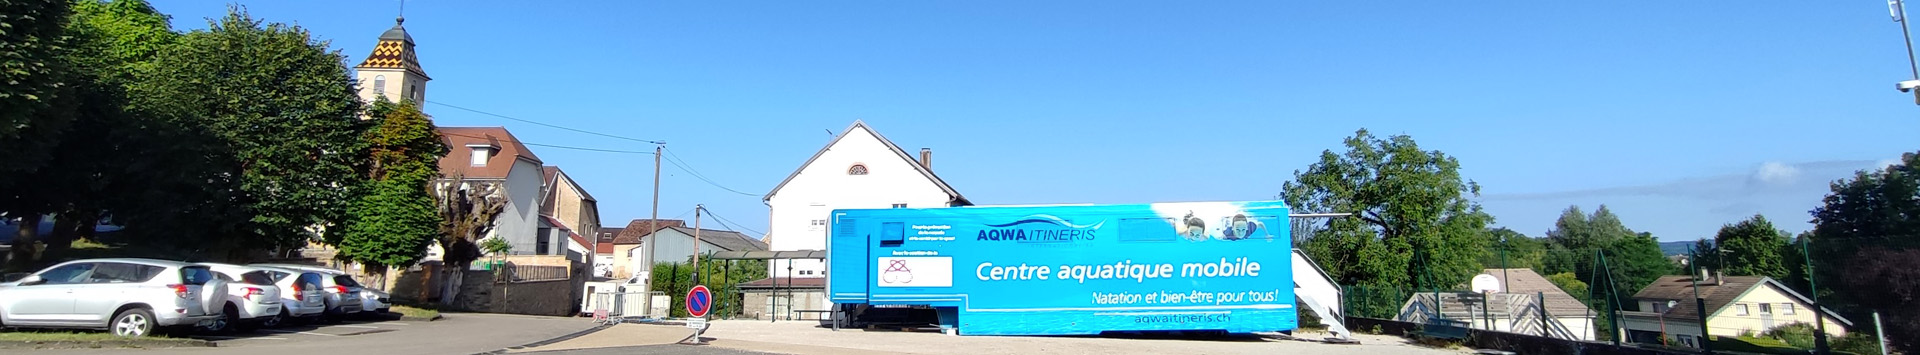 Centre-Aquatique-Mobile-Marnay.jpg